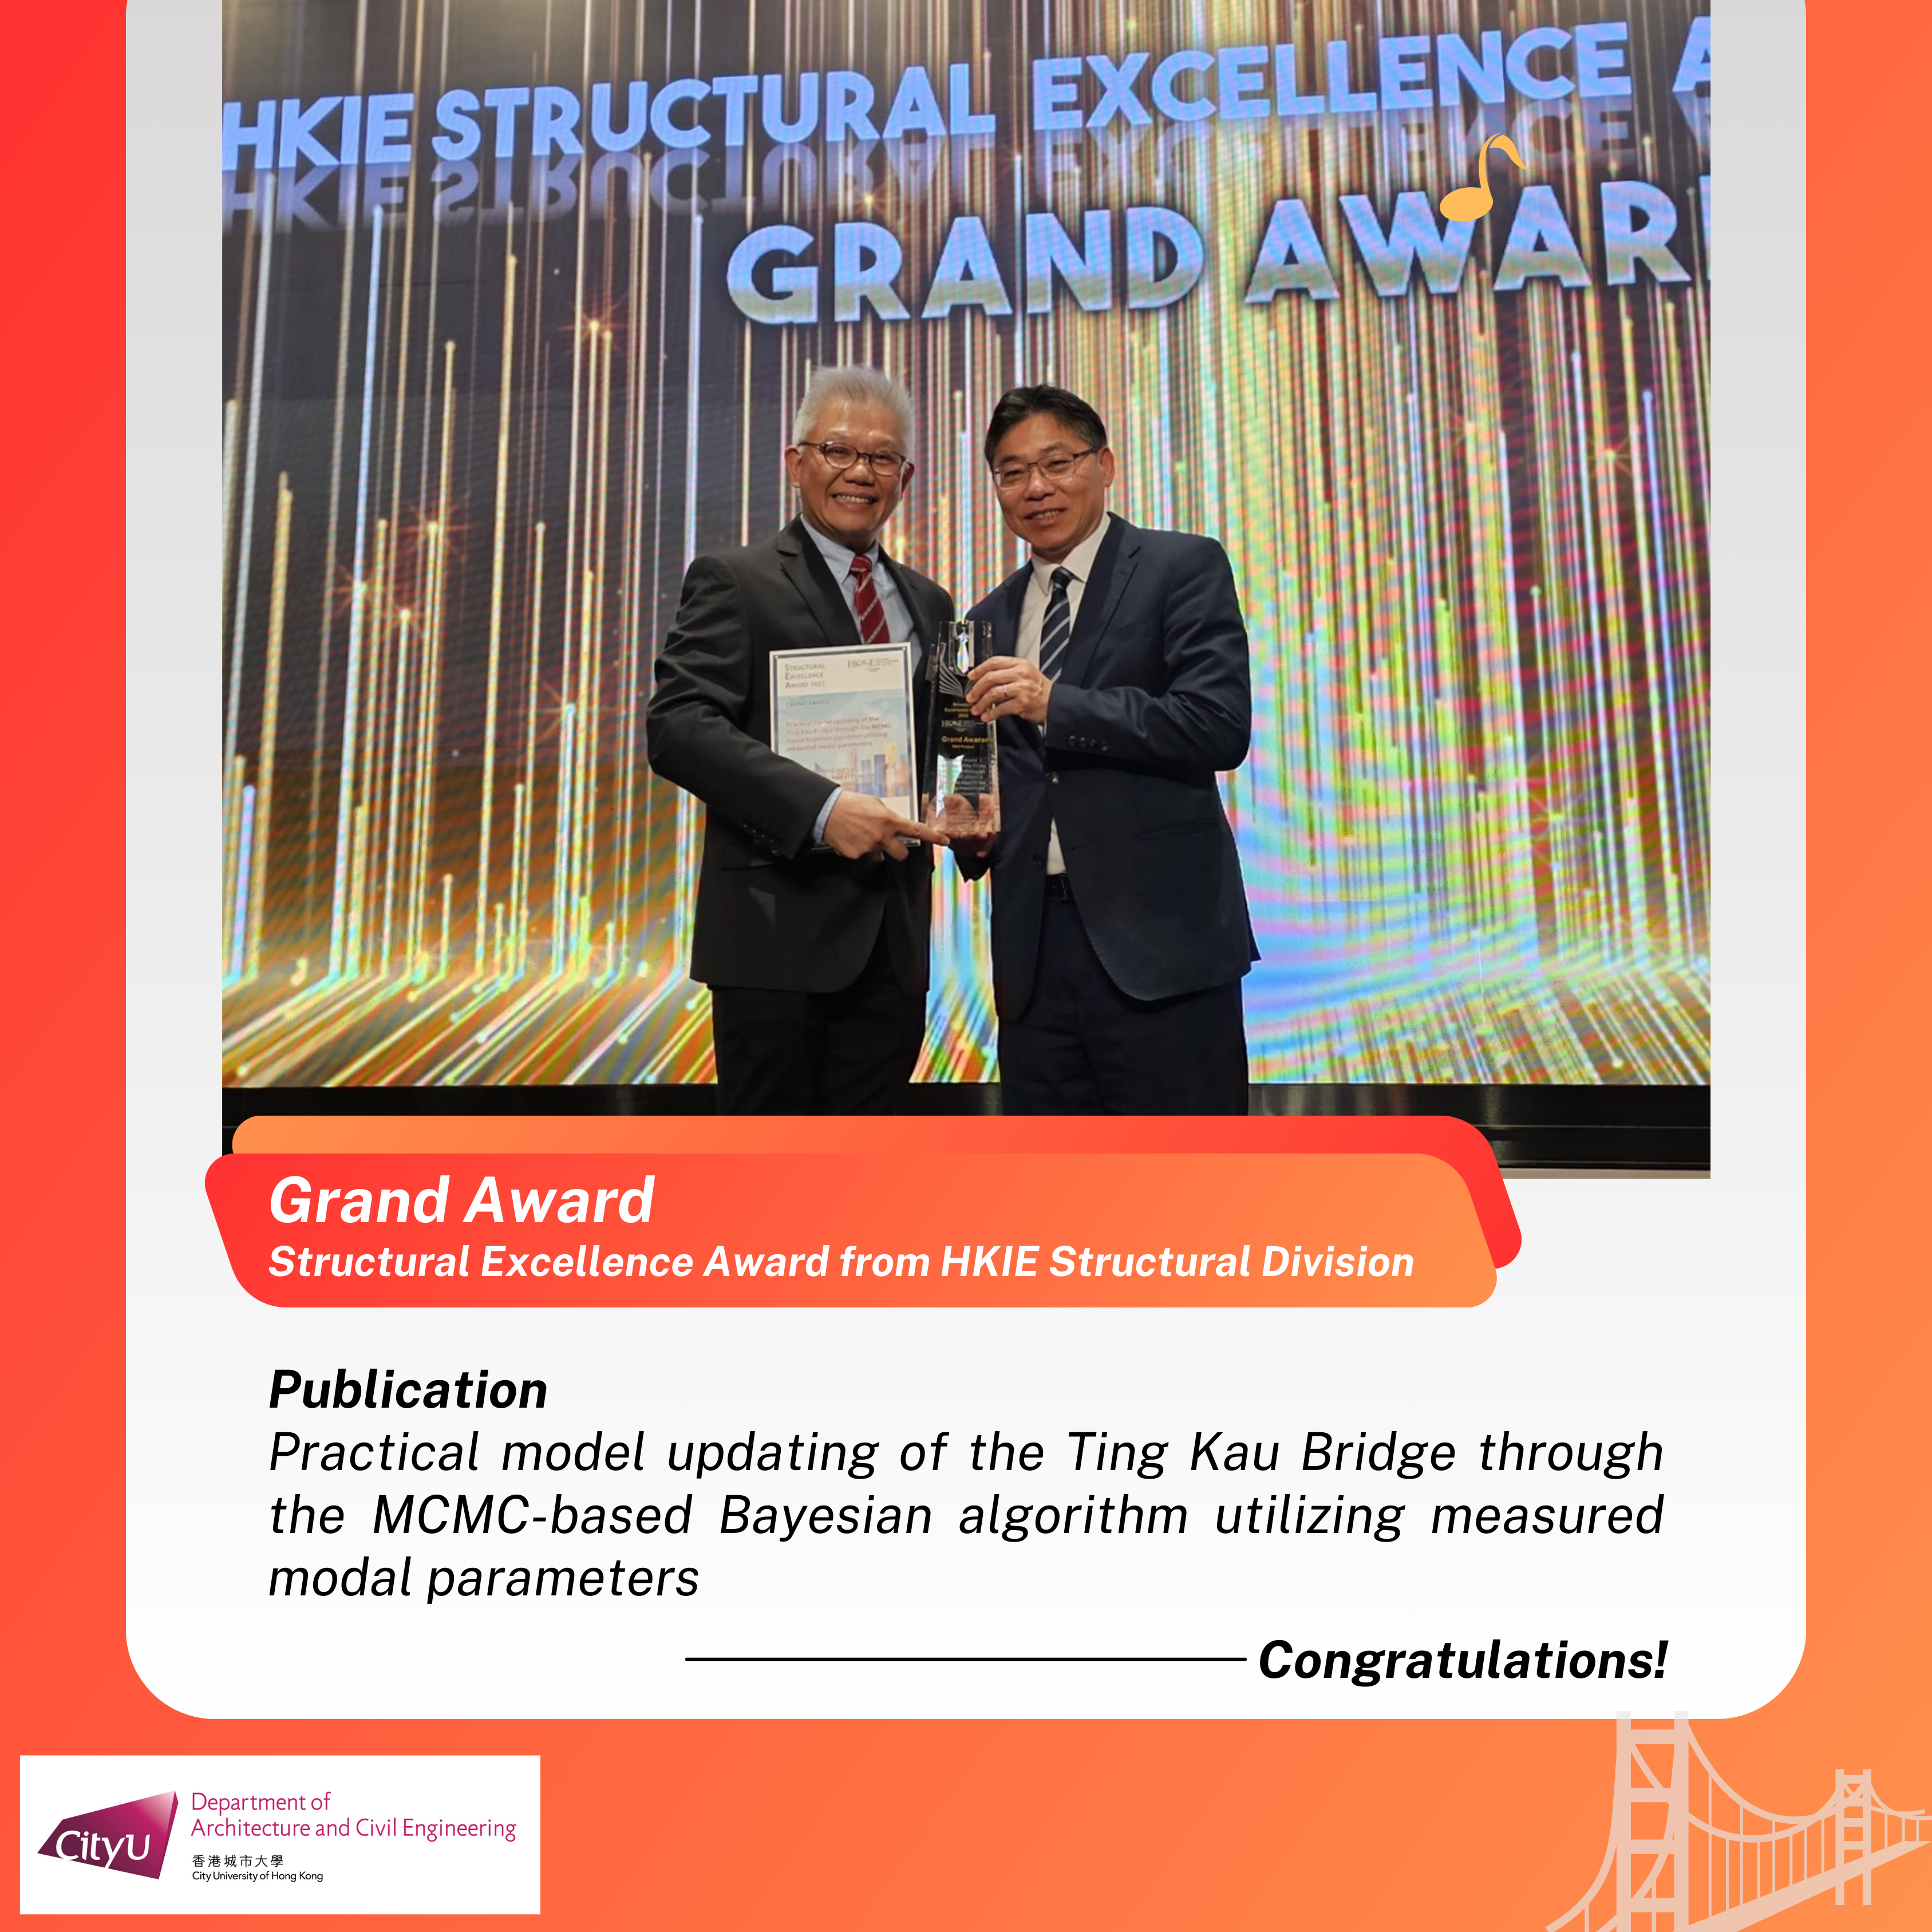  Ir Prof LAM Heung-fai received the Grand Award 